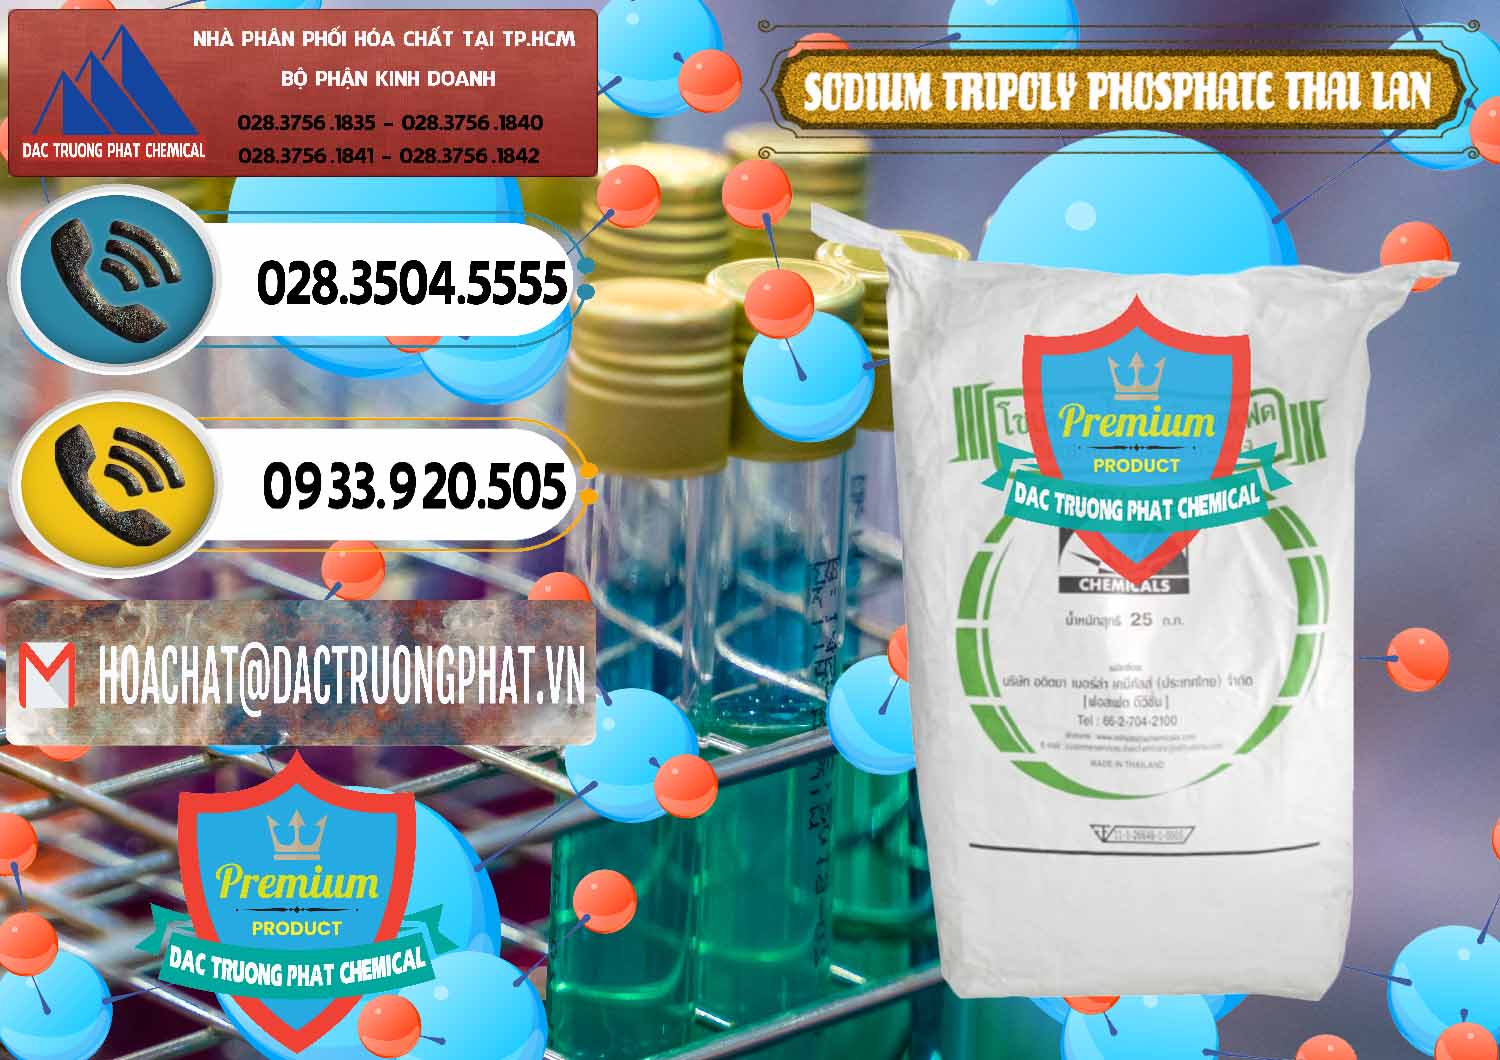 Cty bán - cung cấp Sodium Tripoly Phosphate - STPP Aditya Birla Grasim Thái Lan Thailand - 0421 - Nơi chuyên kinh doanh - cung cấp hóa chất tại TP.HCM - hoachatdetnhuom.vn